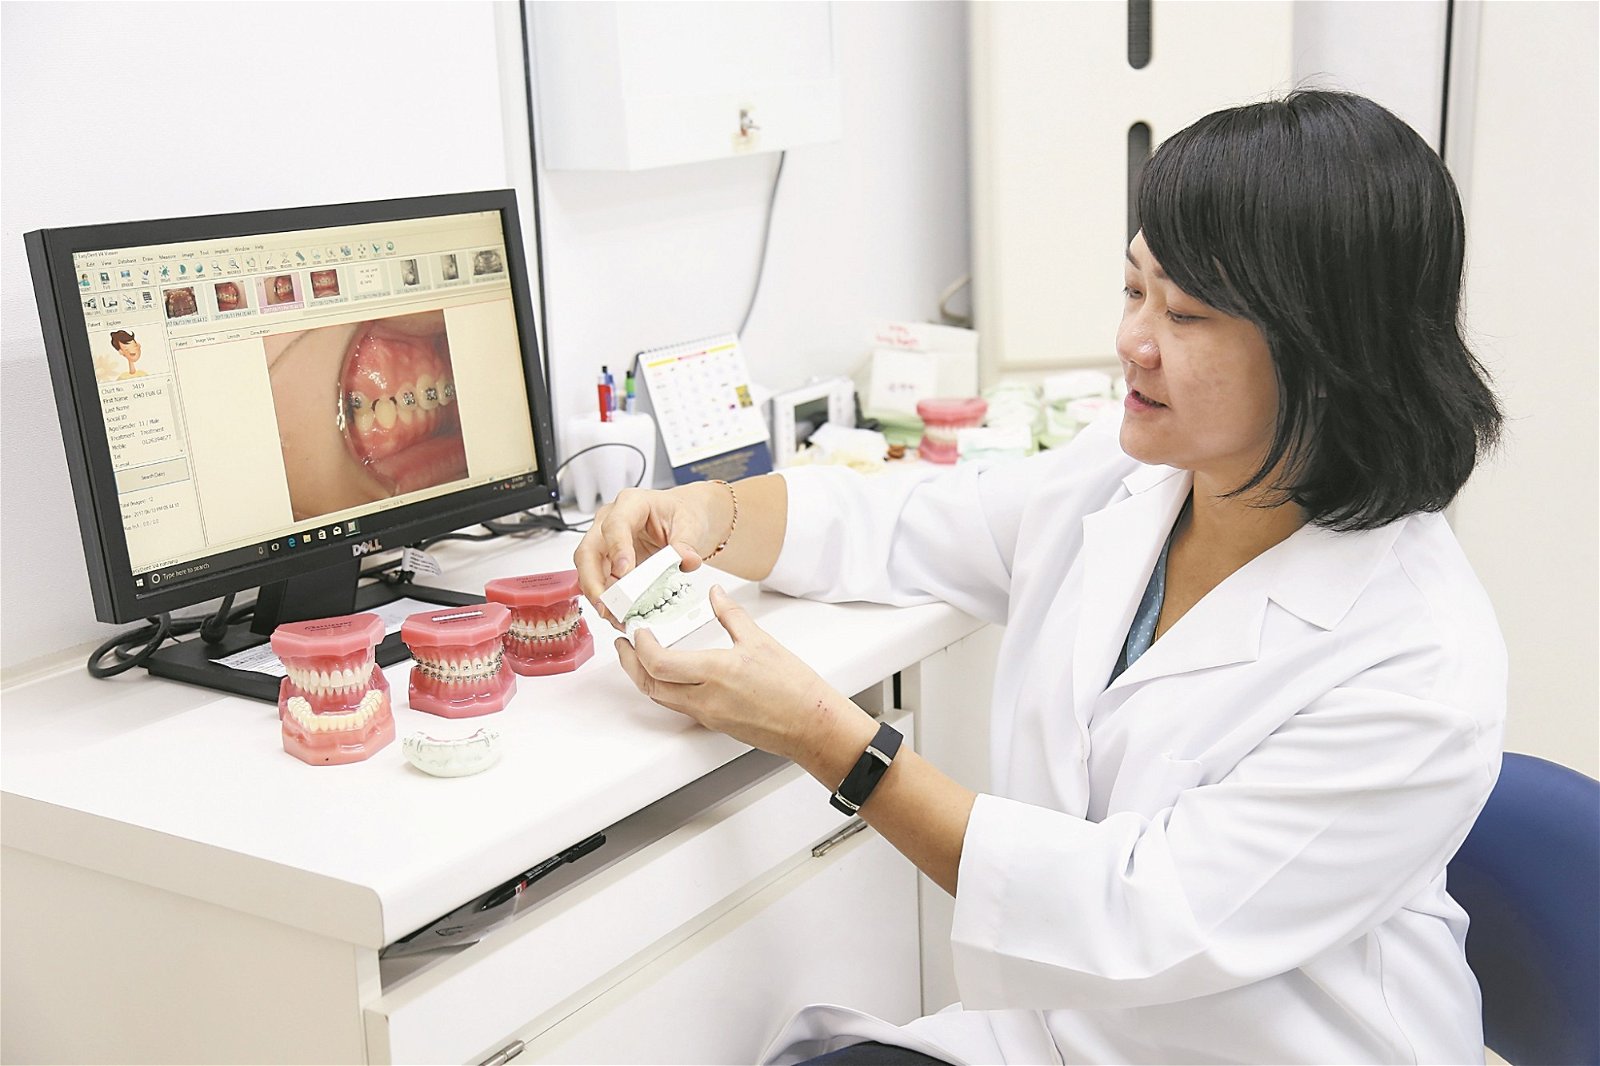 郑若蕙展示各类型矫正器和牙模。她解释普遍民众对绑牙的迷思：“绑牙后不会使牙齿长期无力，只要适应一段时间，牙齿又能重回昔日正常咀嚼力度。”能帮助别人重拾信心，是她目前做牙医最大的推动力。